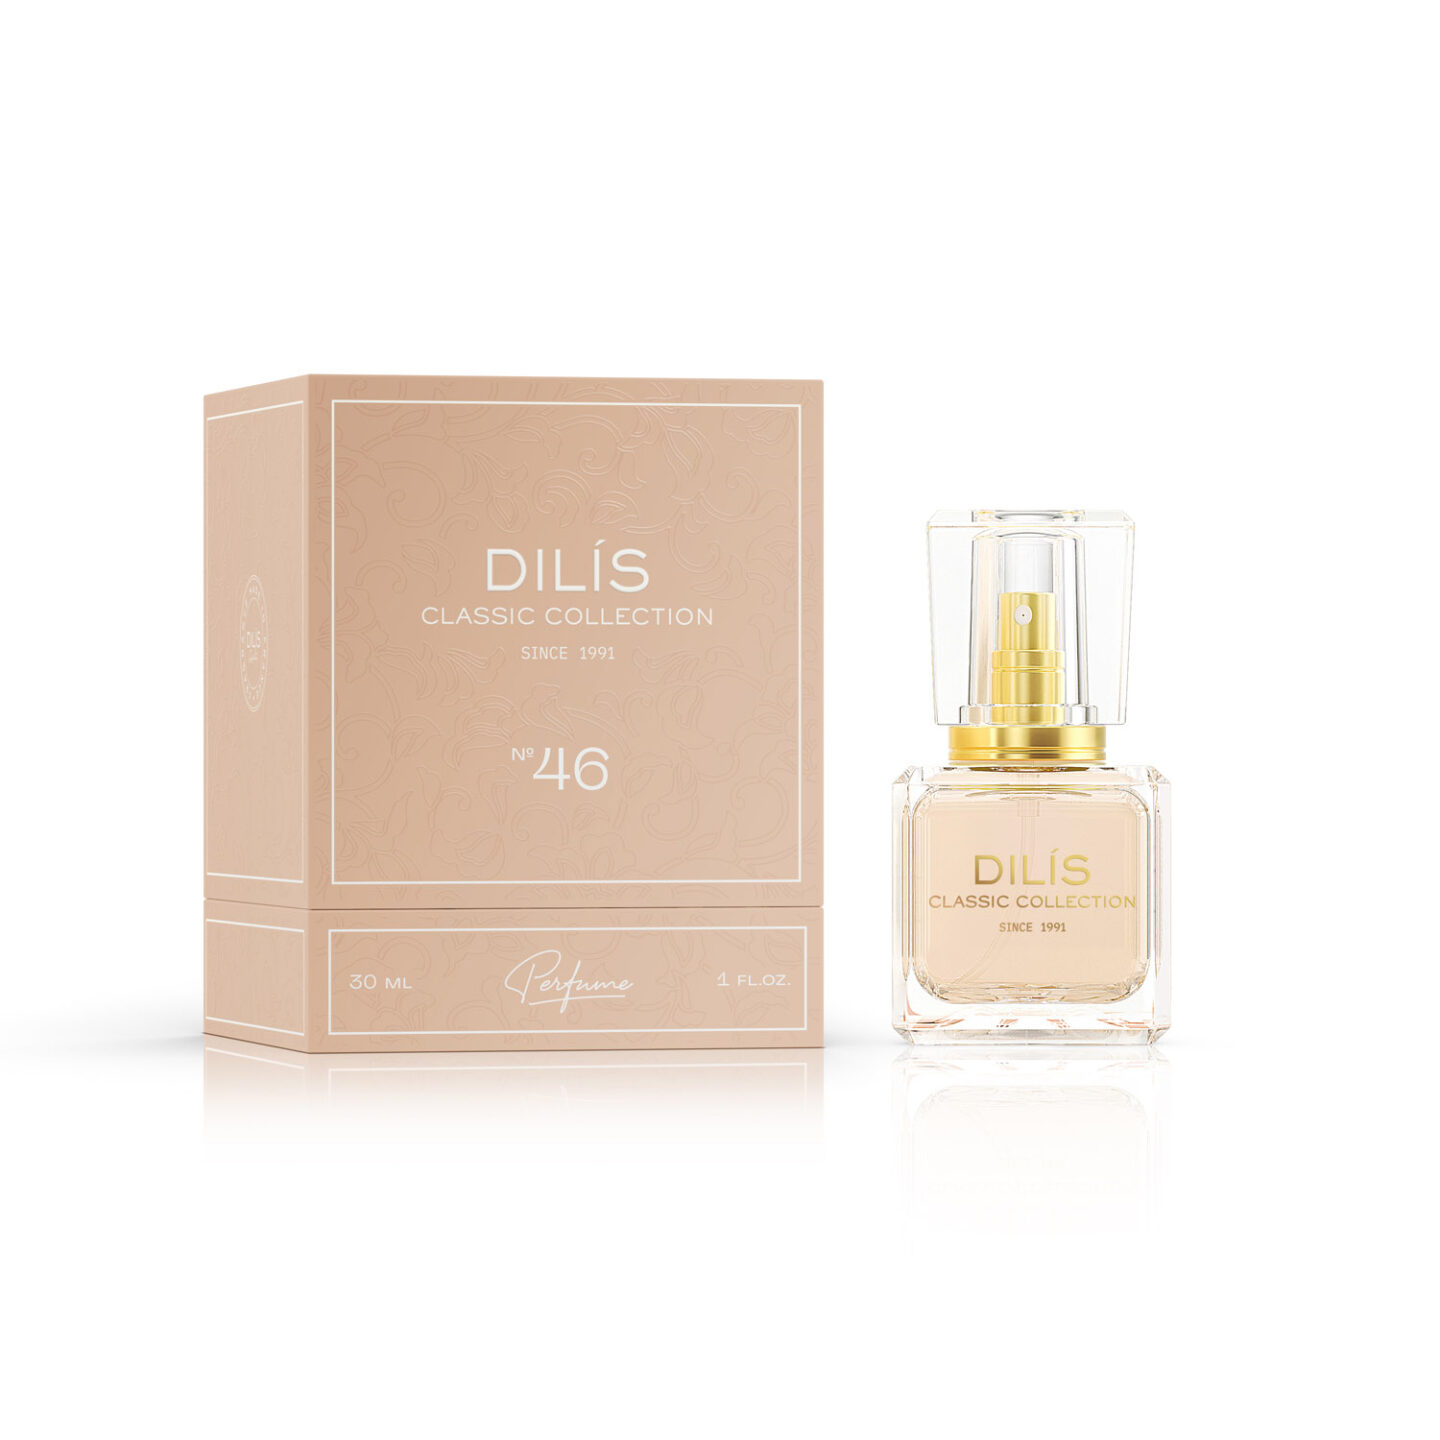 Духи женская Dilis Classic Collection №46 parfum 30 мл духи женские positive parfum amore darling 10 мл